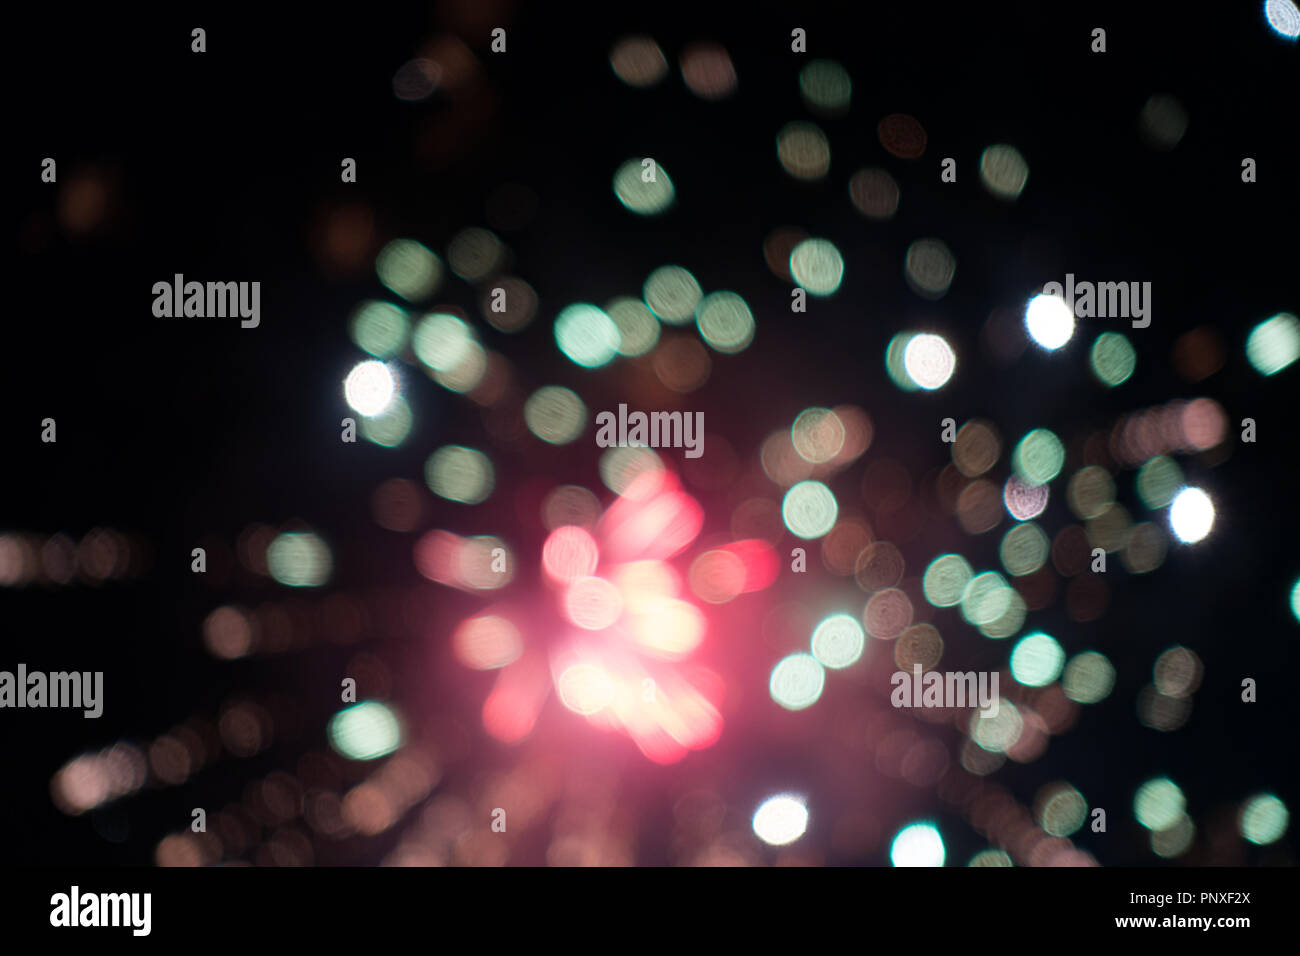 exploding fireworks in night sky. Stock Photo